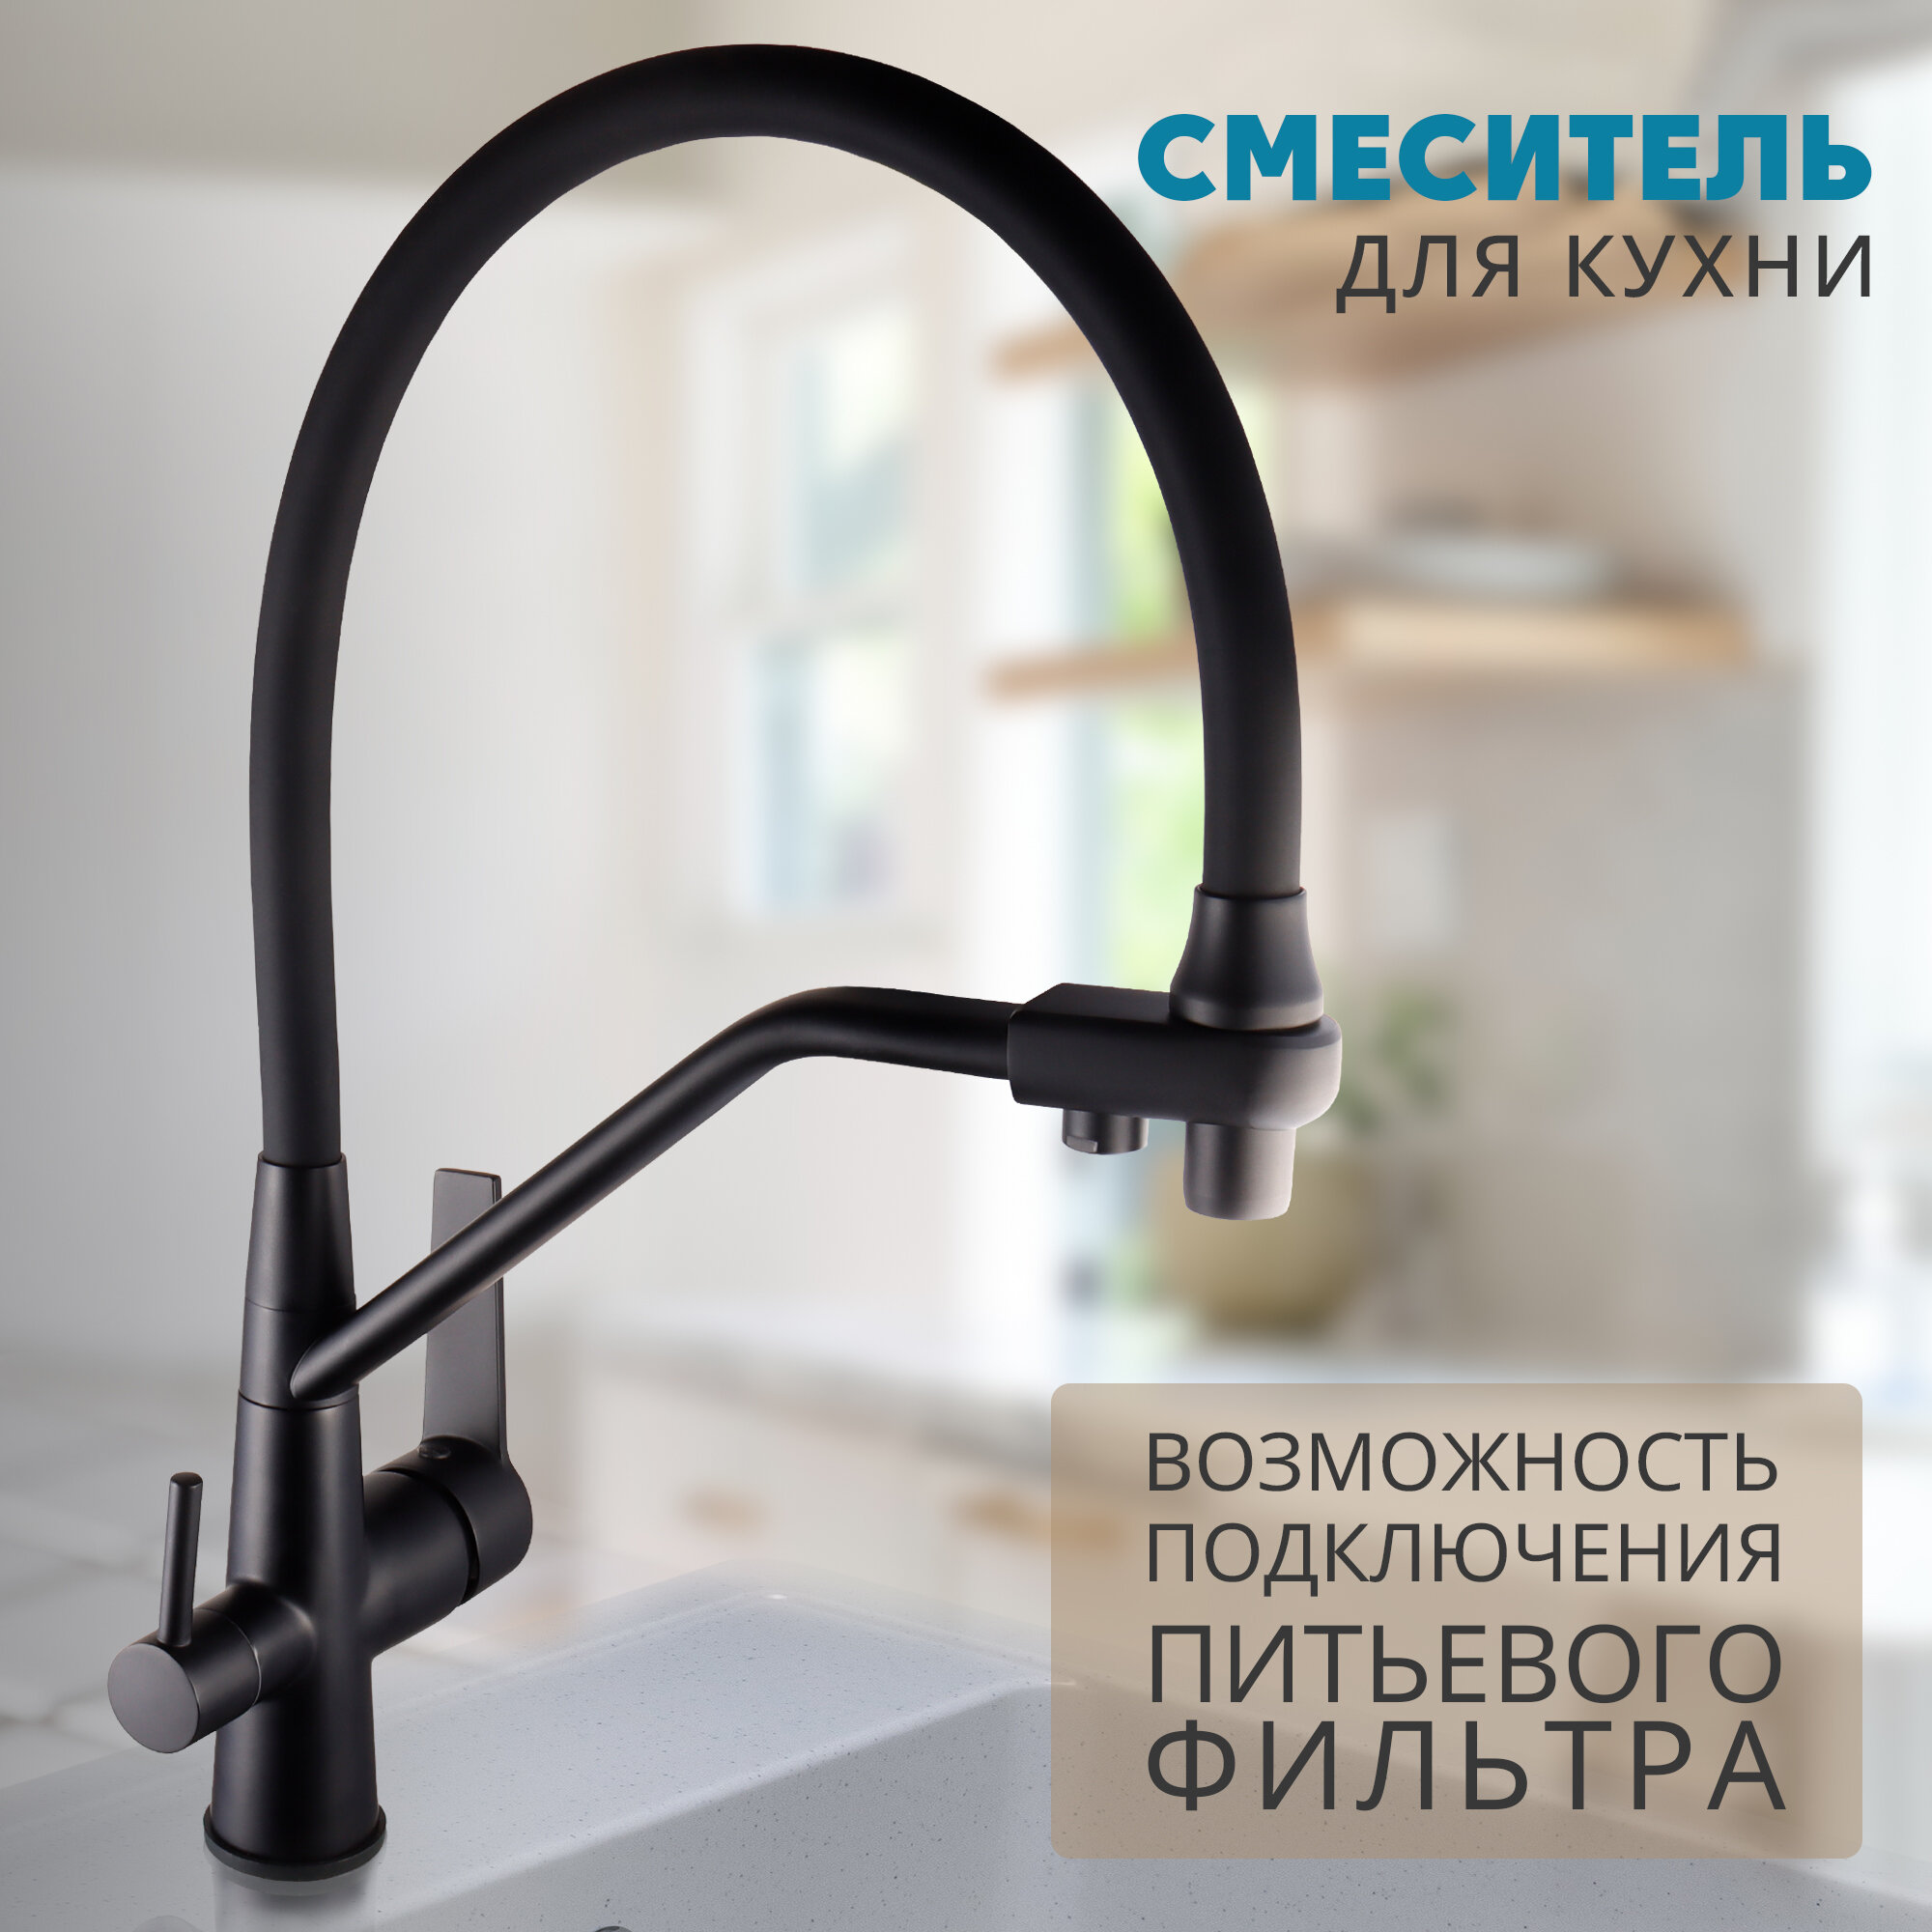 Смеситель для кухни Ekko by Maxonor MN4460-7 с гибким изливом и фильтром для питьевой воды, черный